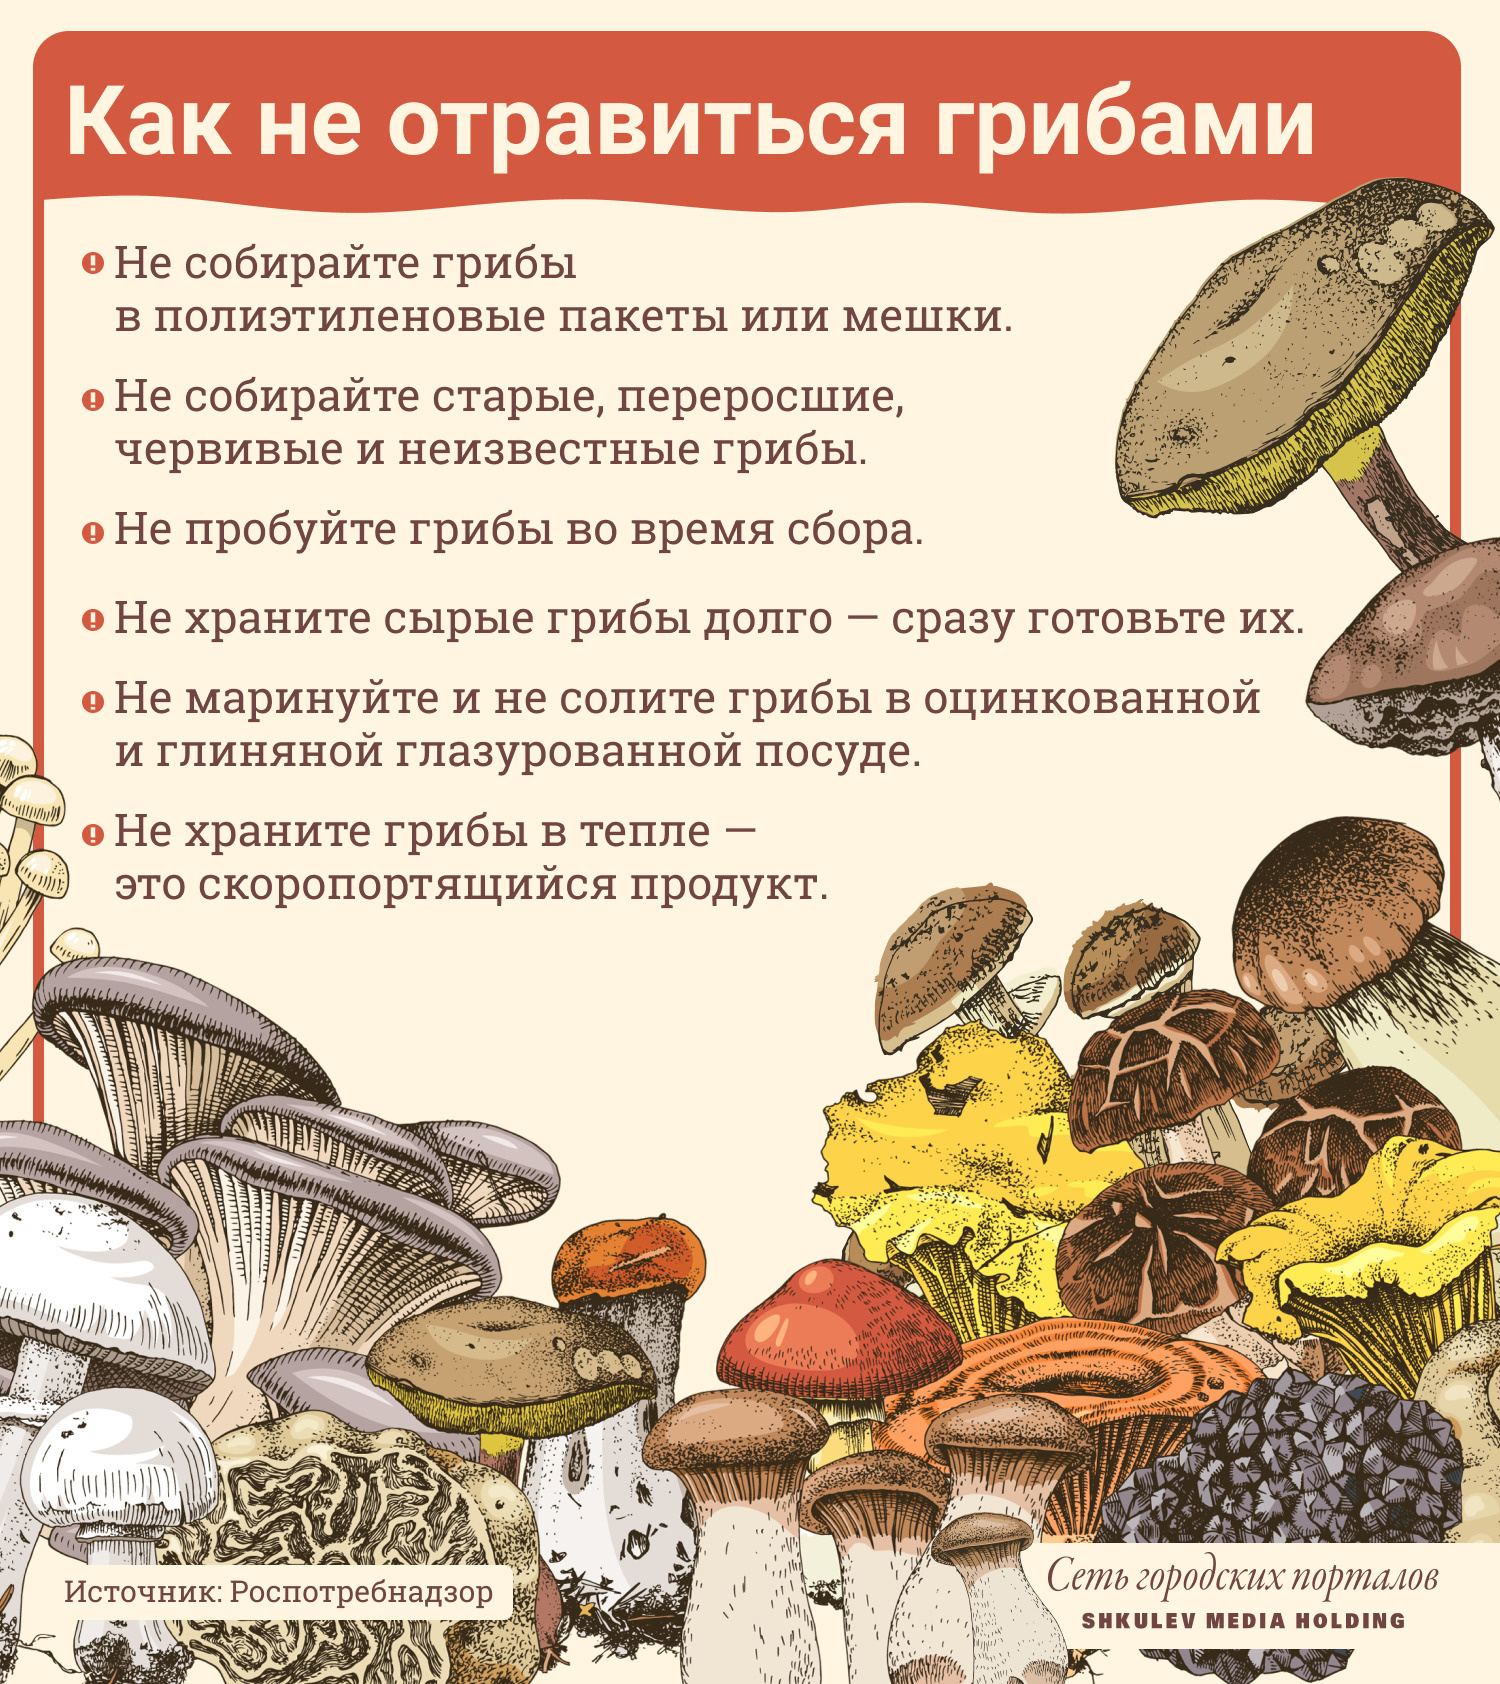 Воронежцам рассказали, как вкусно приготовить грибы | Горком36 новости Воронеж